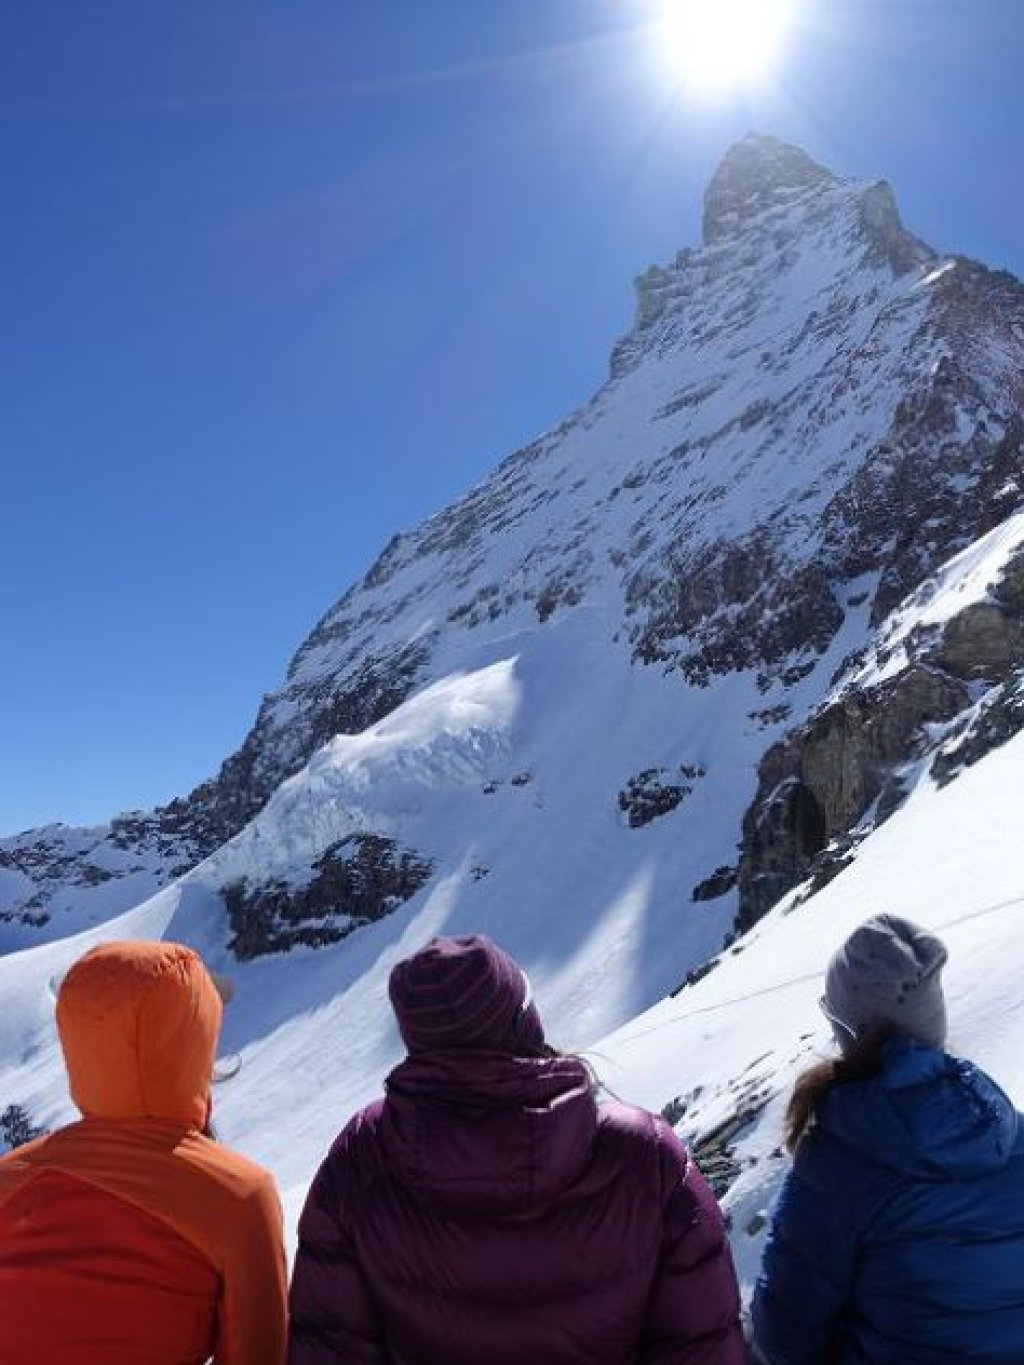 View towards the Matterhorn